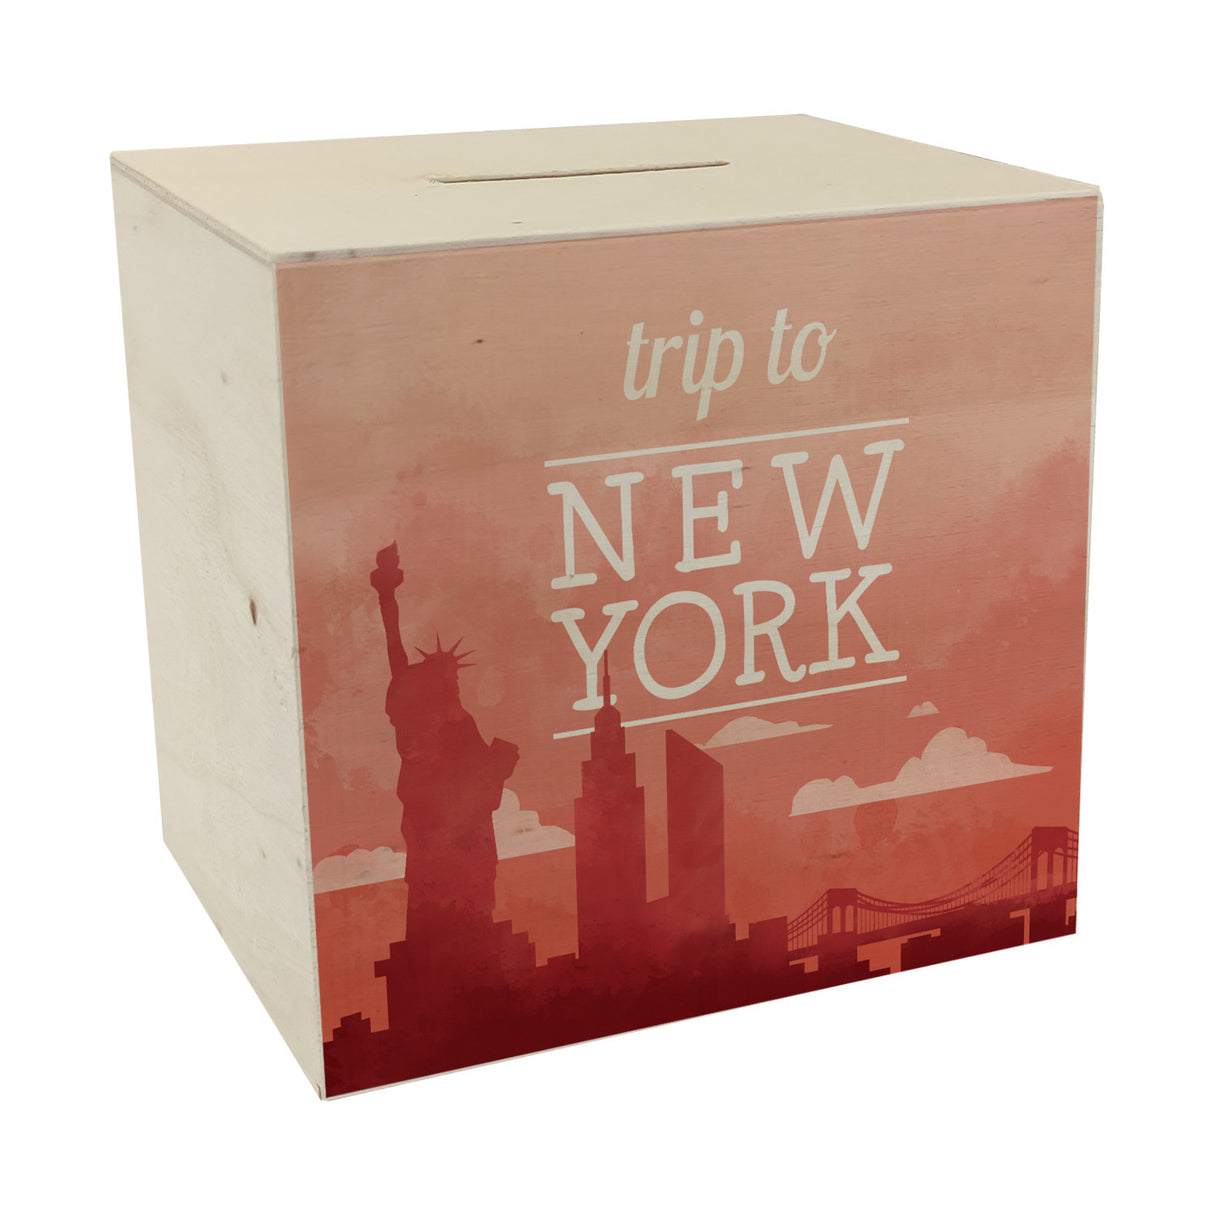 Spardose mit schönem Motiv und Text - Trip to New York in rot